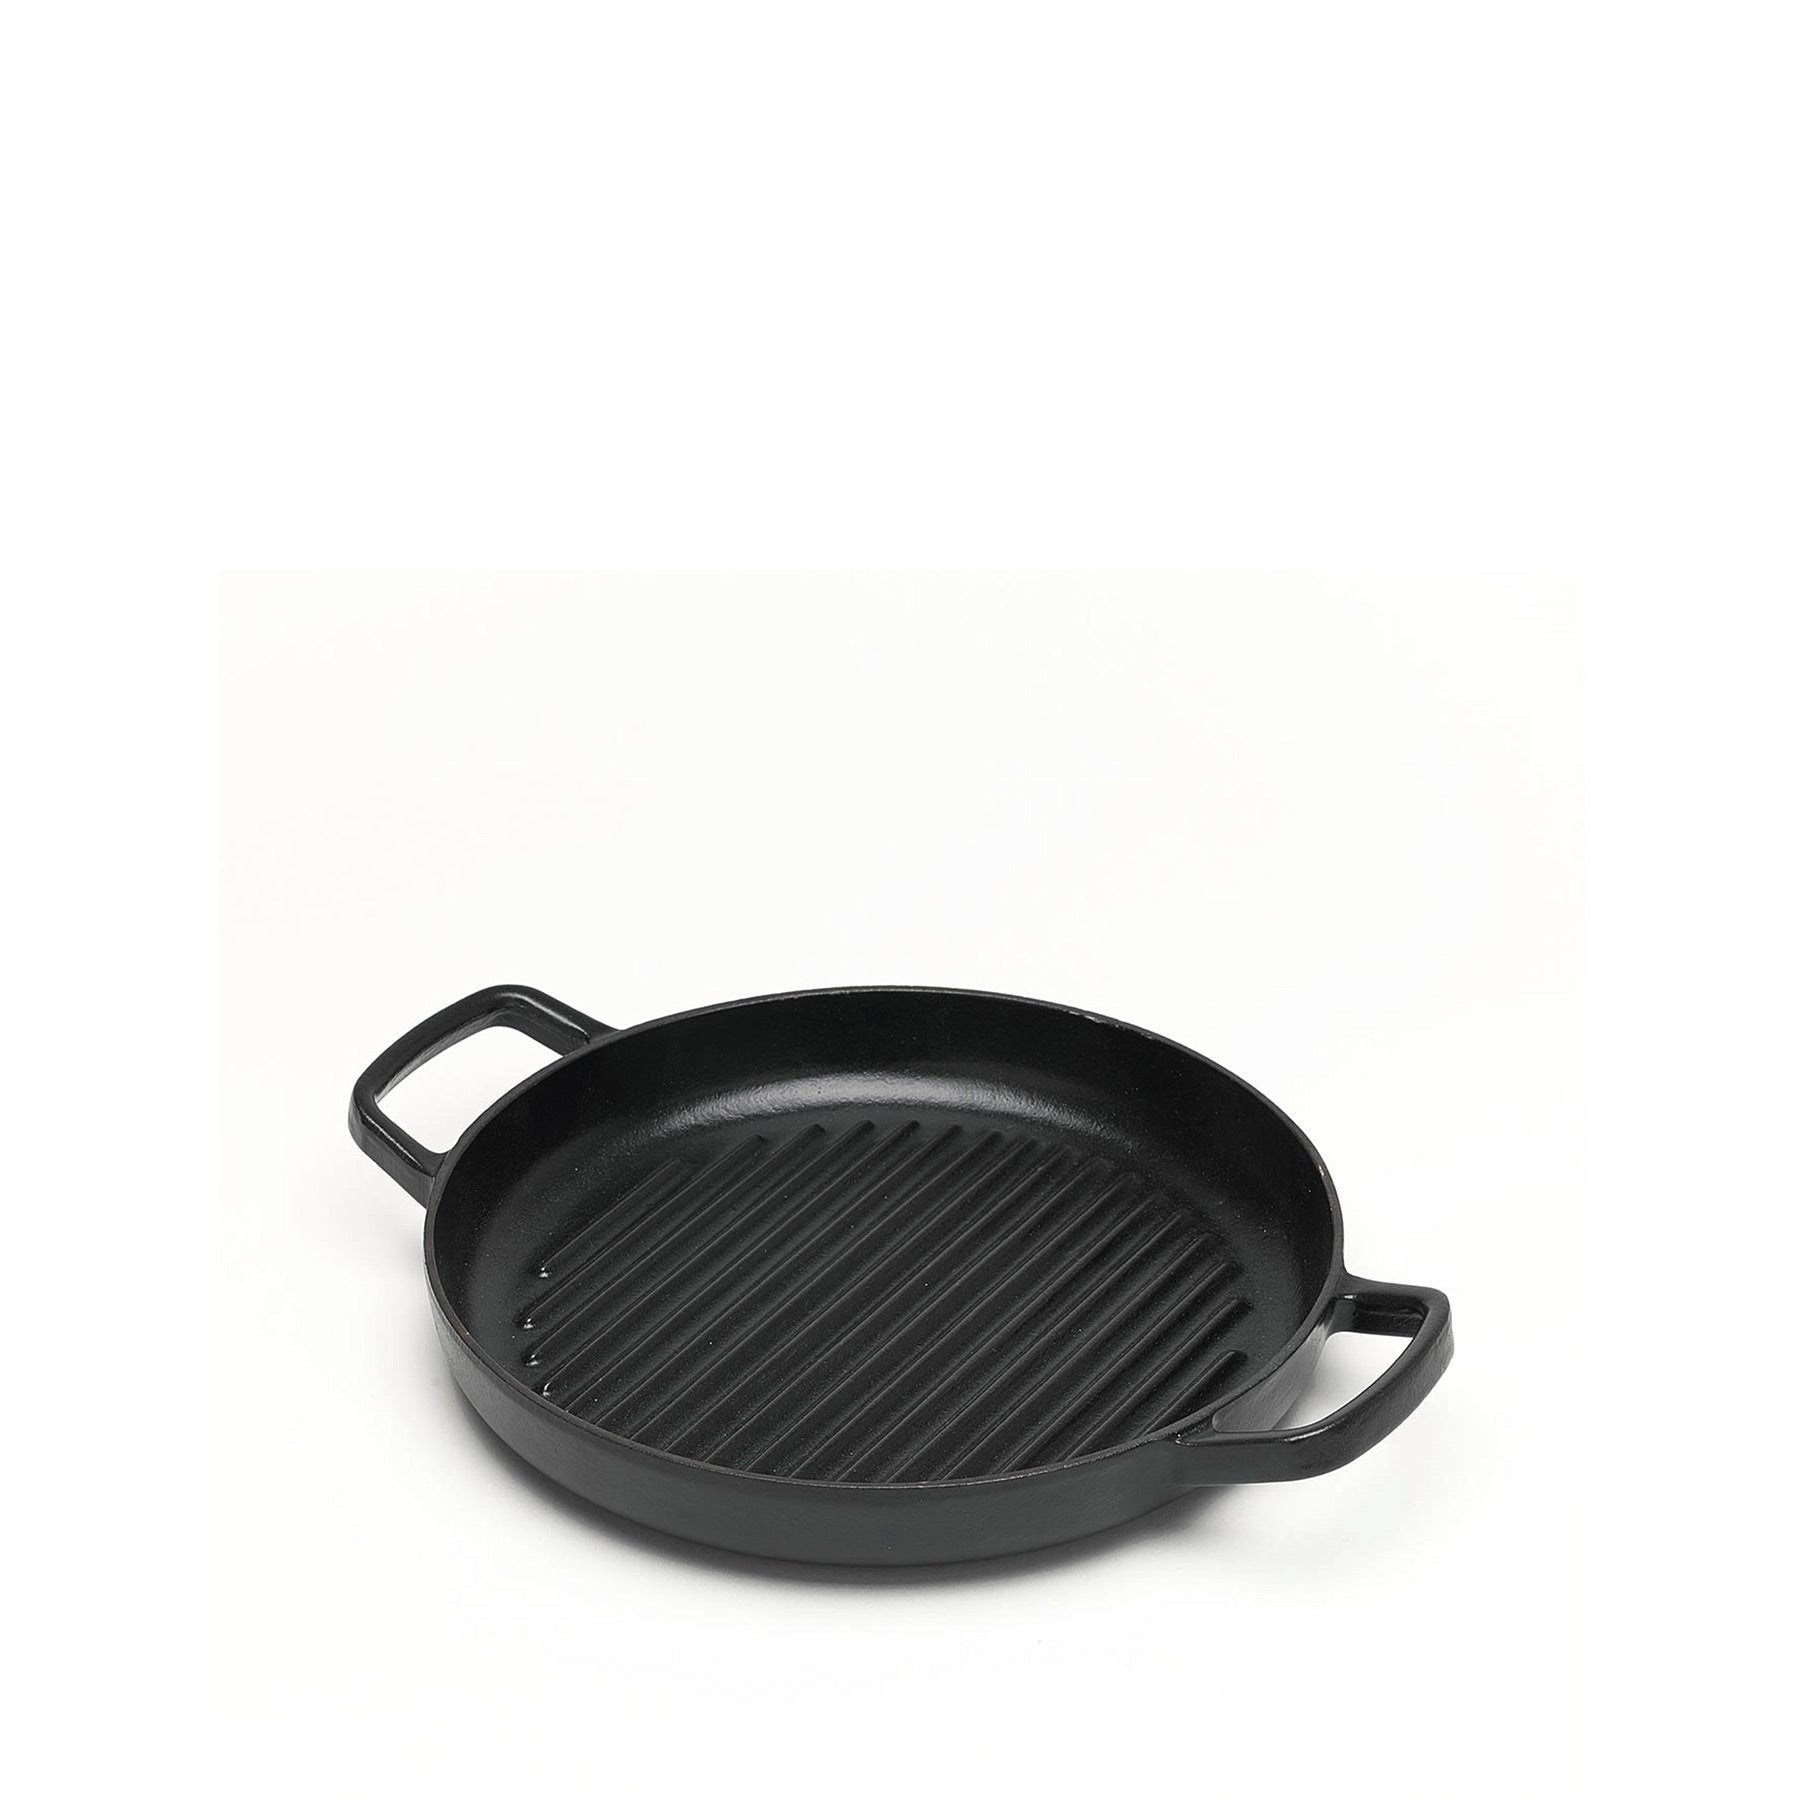 grillpan griddle cast iron enamel black –